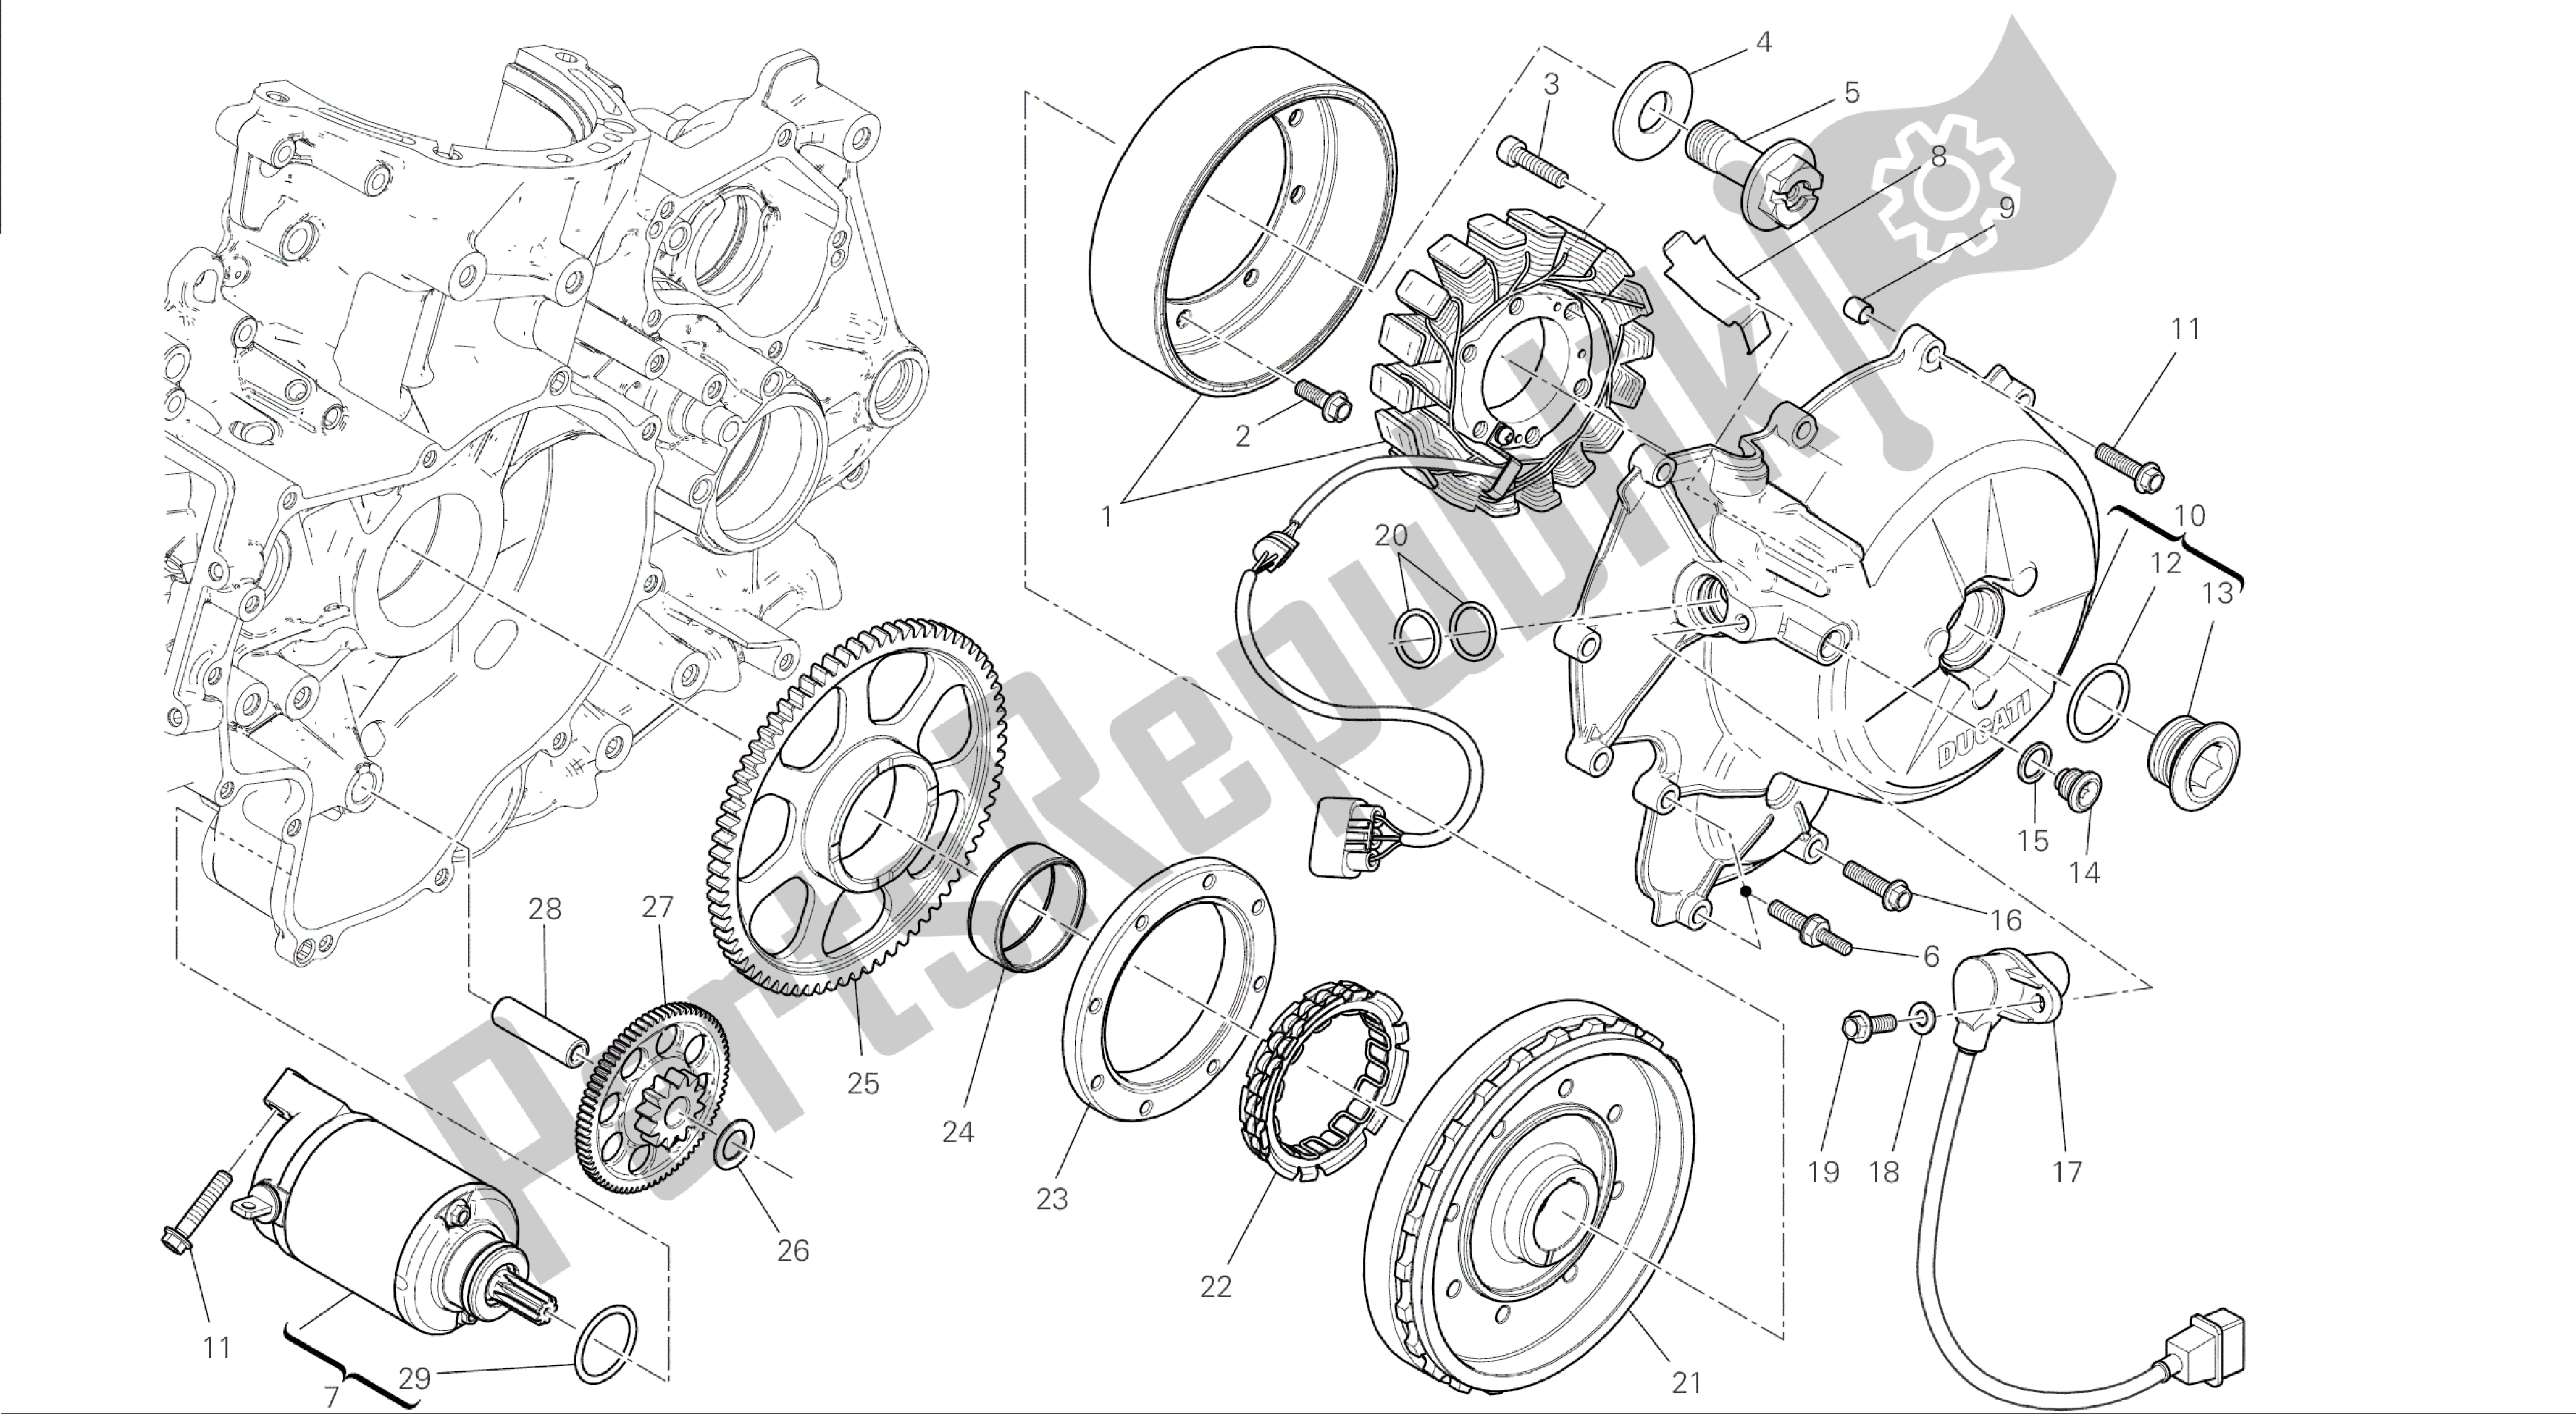 Alle onderdelen voor de Tekening 012 - Elektrisch Starten En Ontsteken [mod: 1199abs; Xst: Aus, Bra, Chn, Eur, Fra, Jap] Groepsmotor van de Ducati Panigale ABS 1199 2014